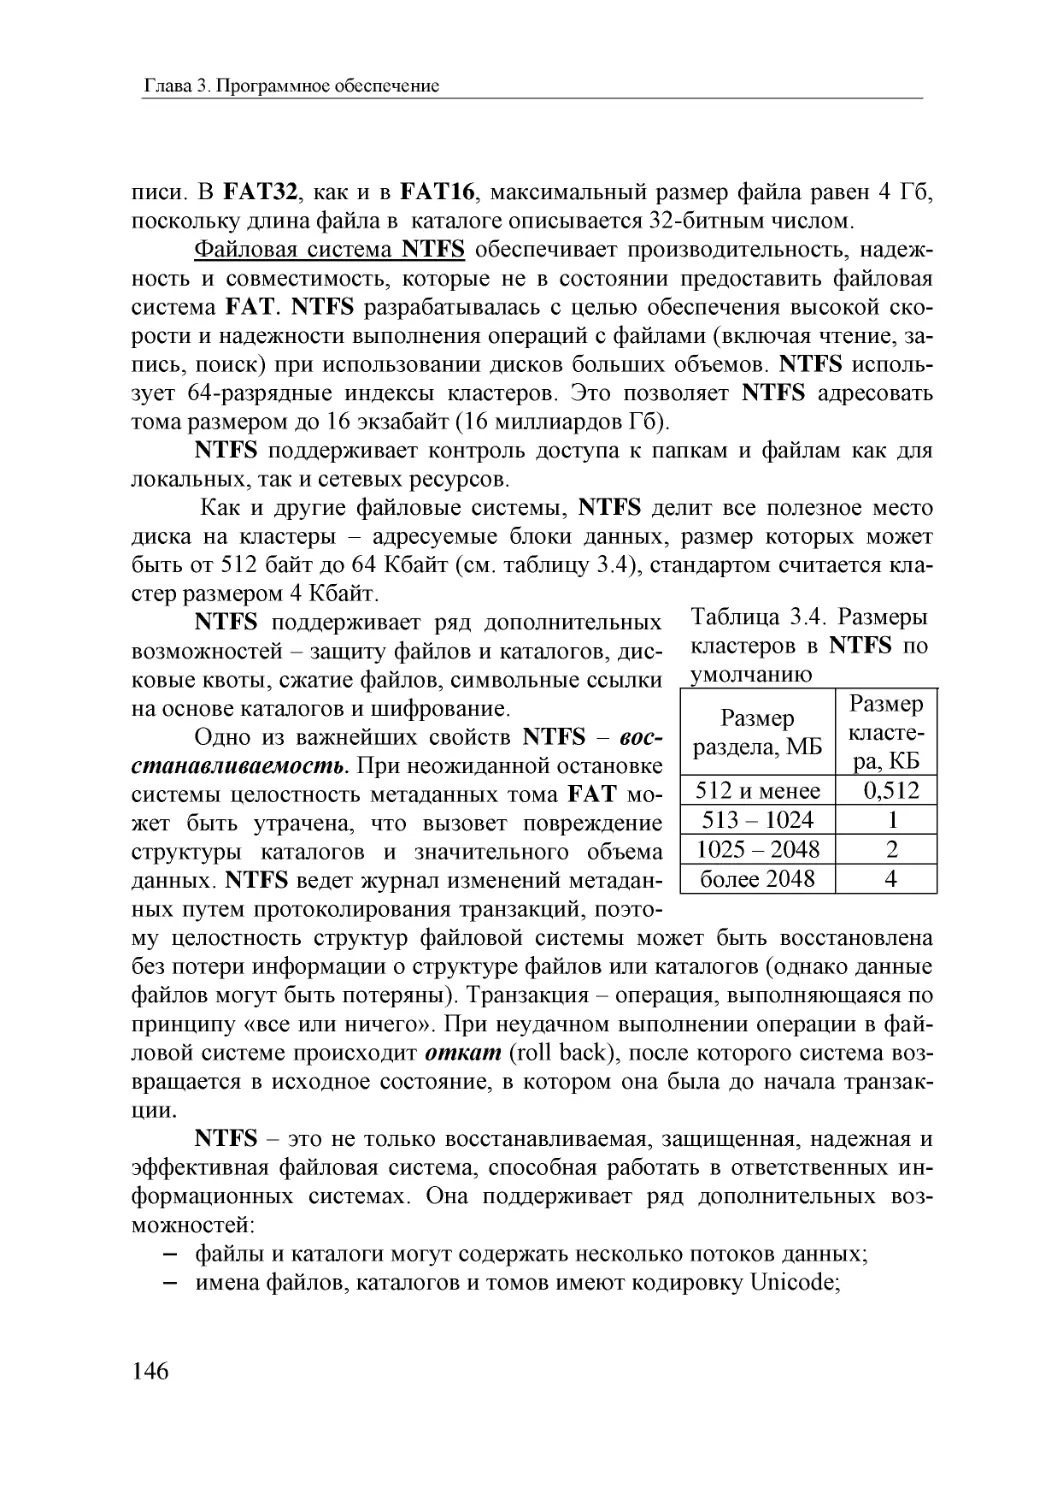 Informatika_Uchebnik_dlya_vuzov_2010 146